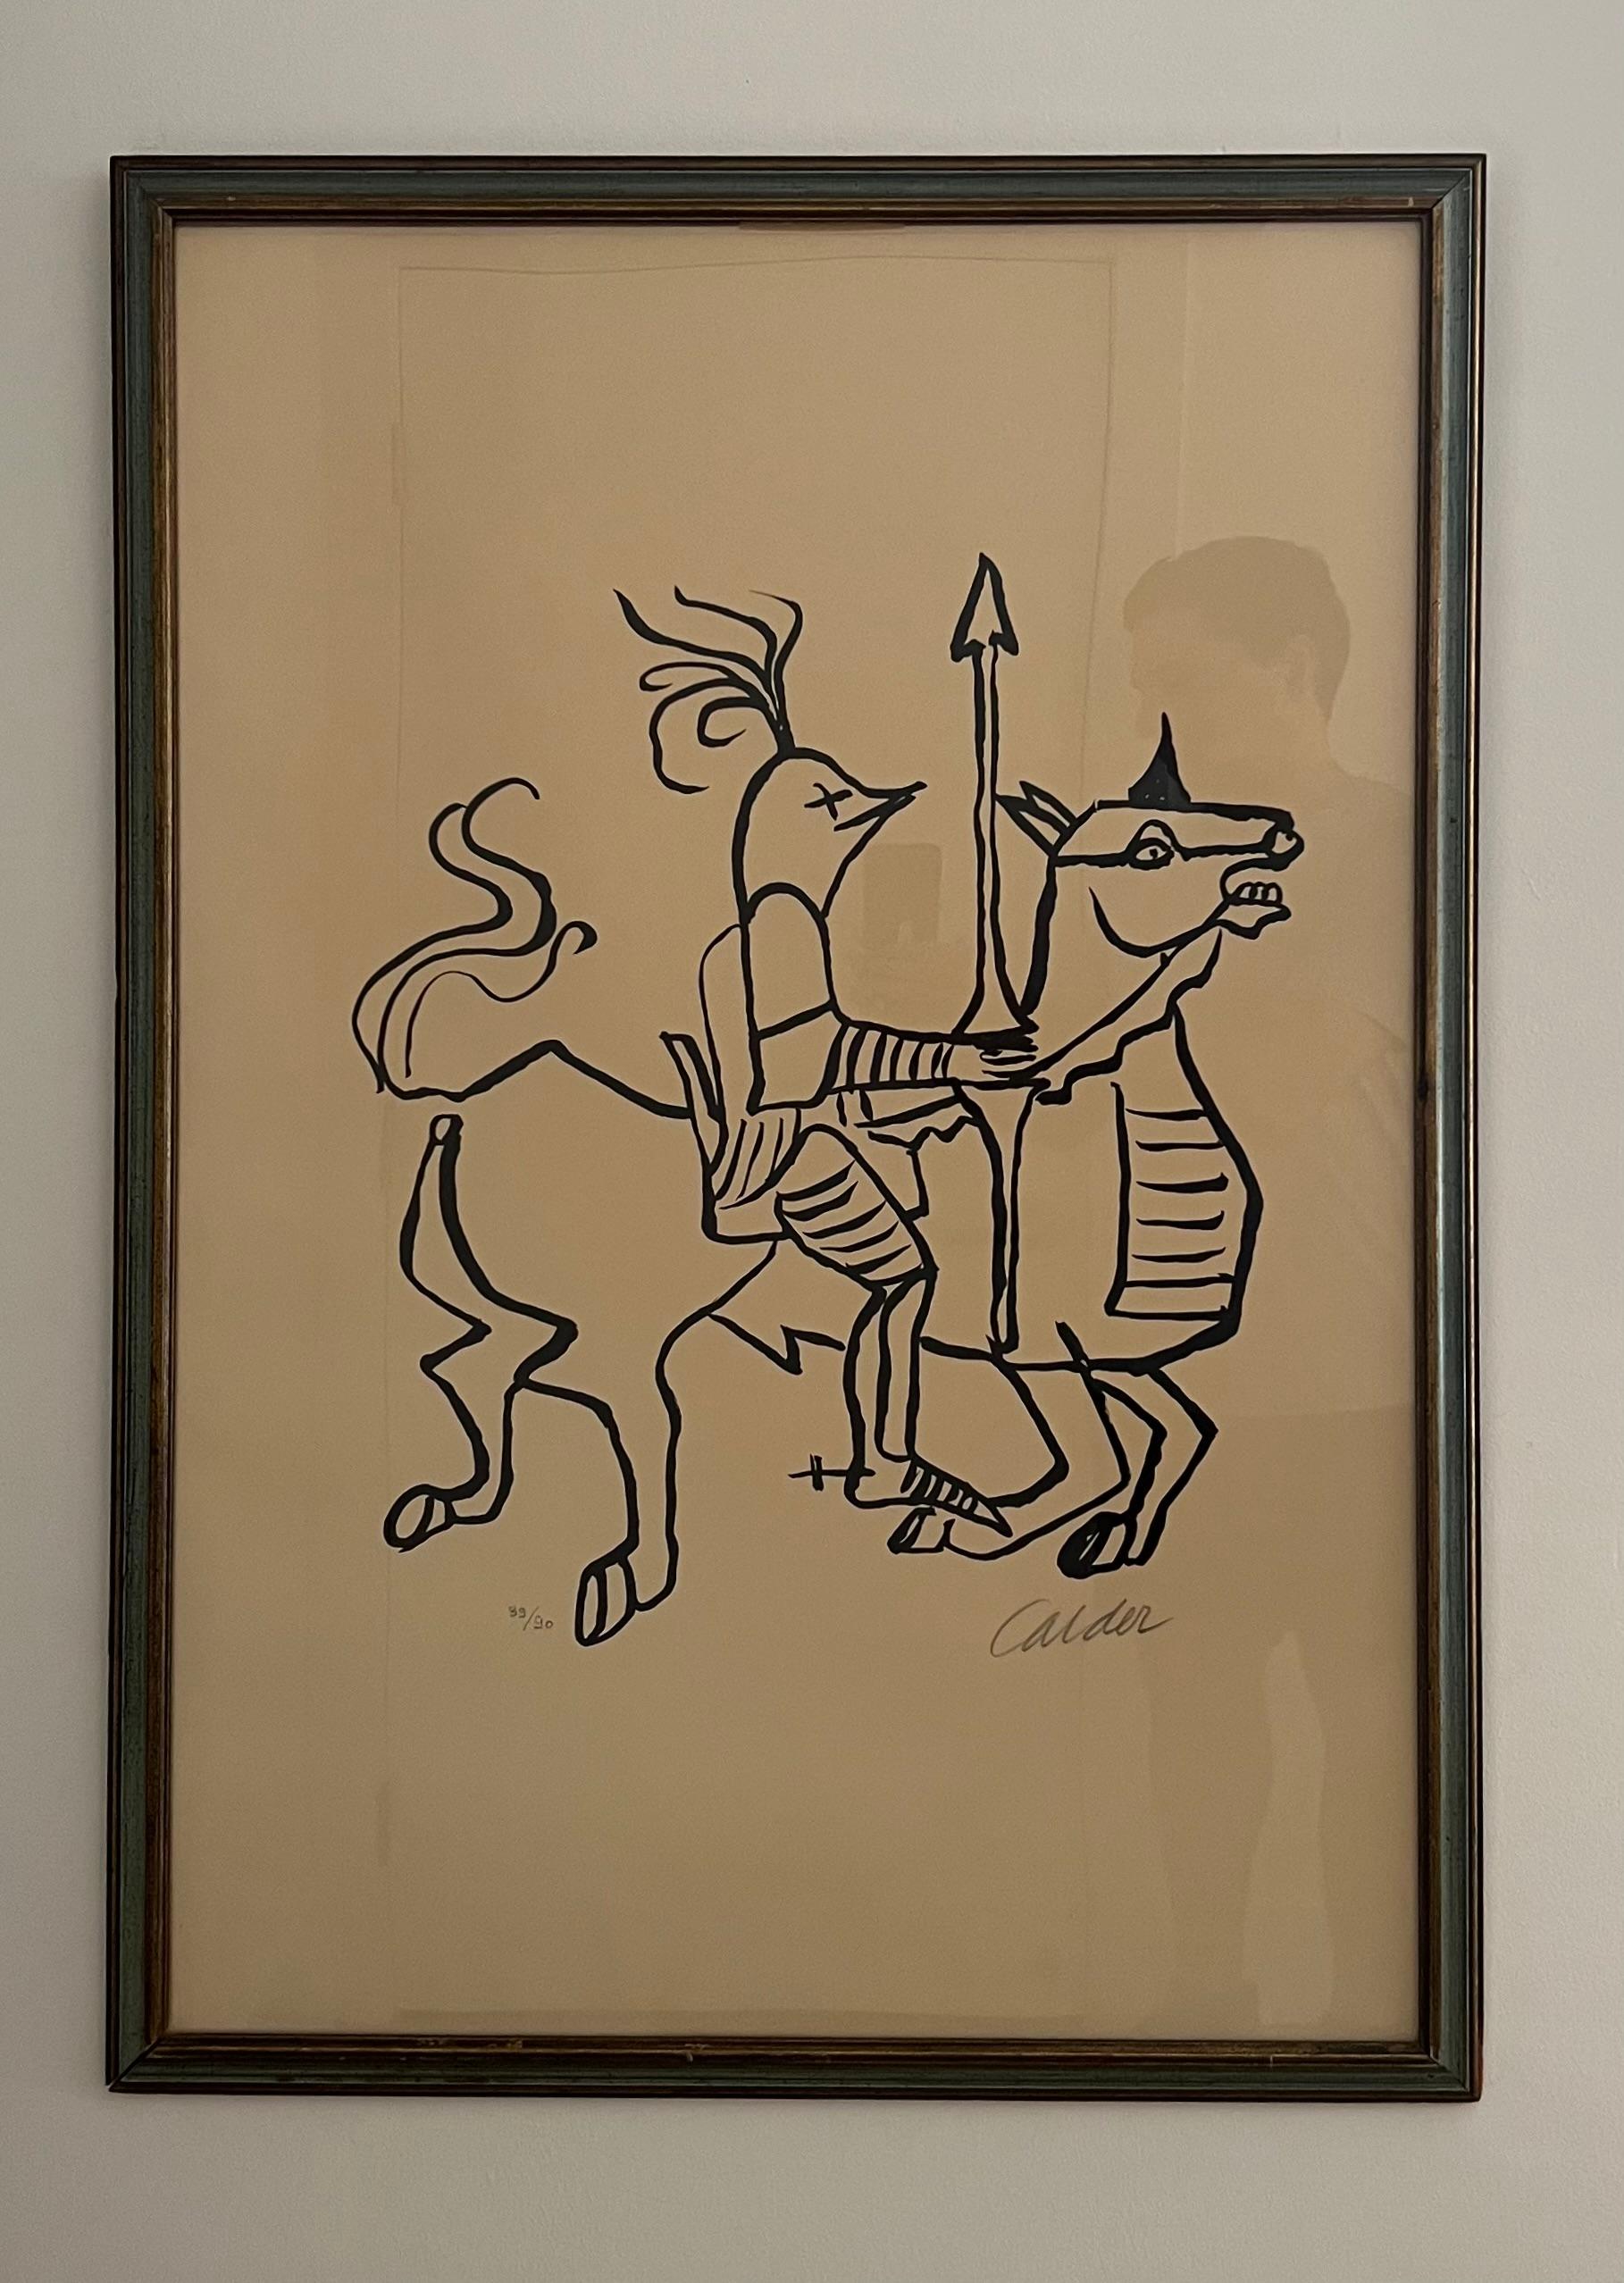 Le Chevalier, 1968

Lithographie sur papier Chiffon de Mandeure

Maeght Editeur, Paris

31.25 x 23.62 pouces 

Signé et numéroté au crayon, édition de 90 exemplaires 

Encadré (non examiné hors du cadre)

Alexander Calder est né à Philadelphie